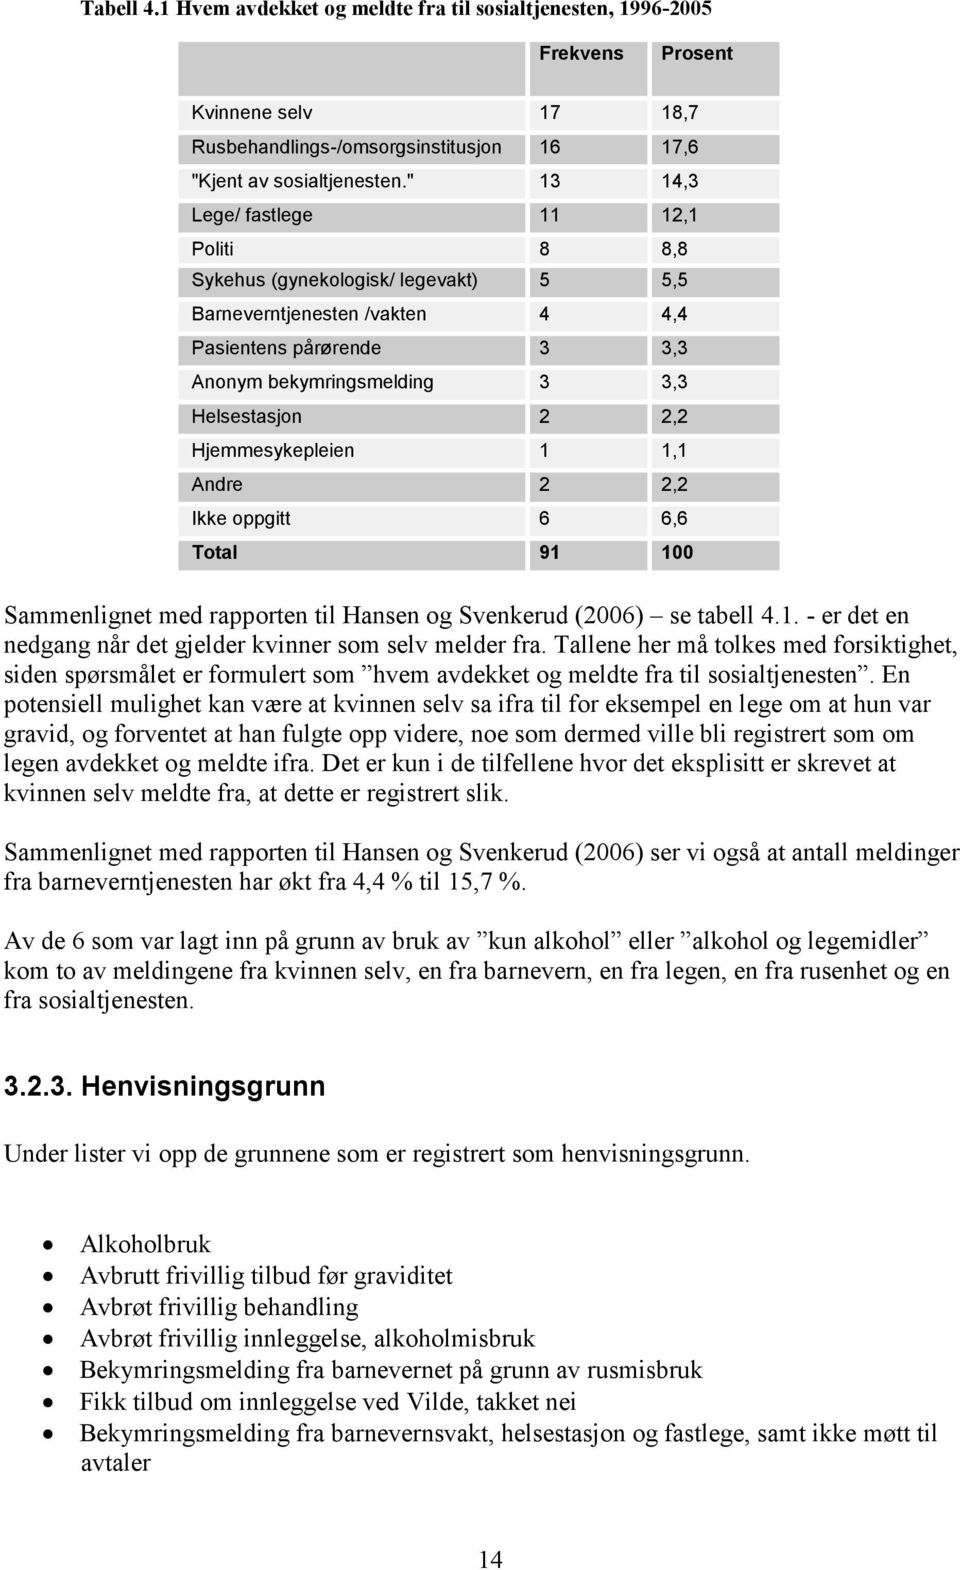 Hjemmesykepleien 1 1,1 Andre 2 2,2 Ikke oppgitt 6 6,6 Total 91 100 Sammenlignet med rapporten til Hansen og Svenkerud (2006) se tabell 4.1. - er det en nedgang når det gjelder kvinner som selv melder fra.